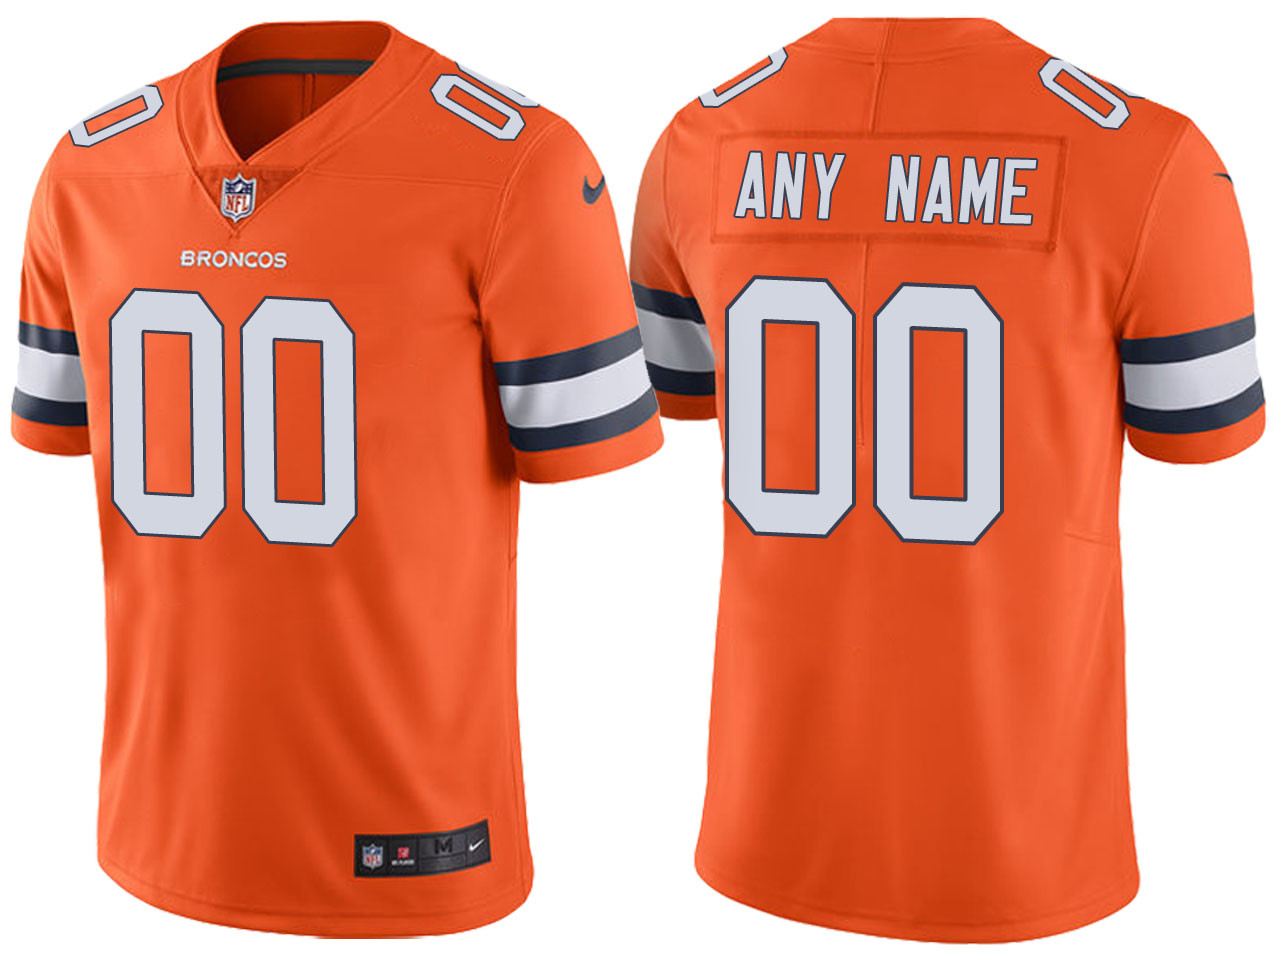 US$ 65 - Men's Nike NFL Denver Broncos Customized Orange Color Rush Limited Jersey ...